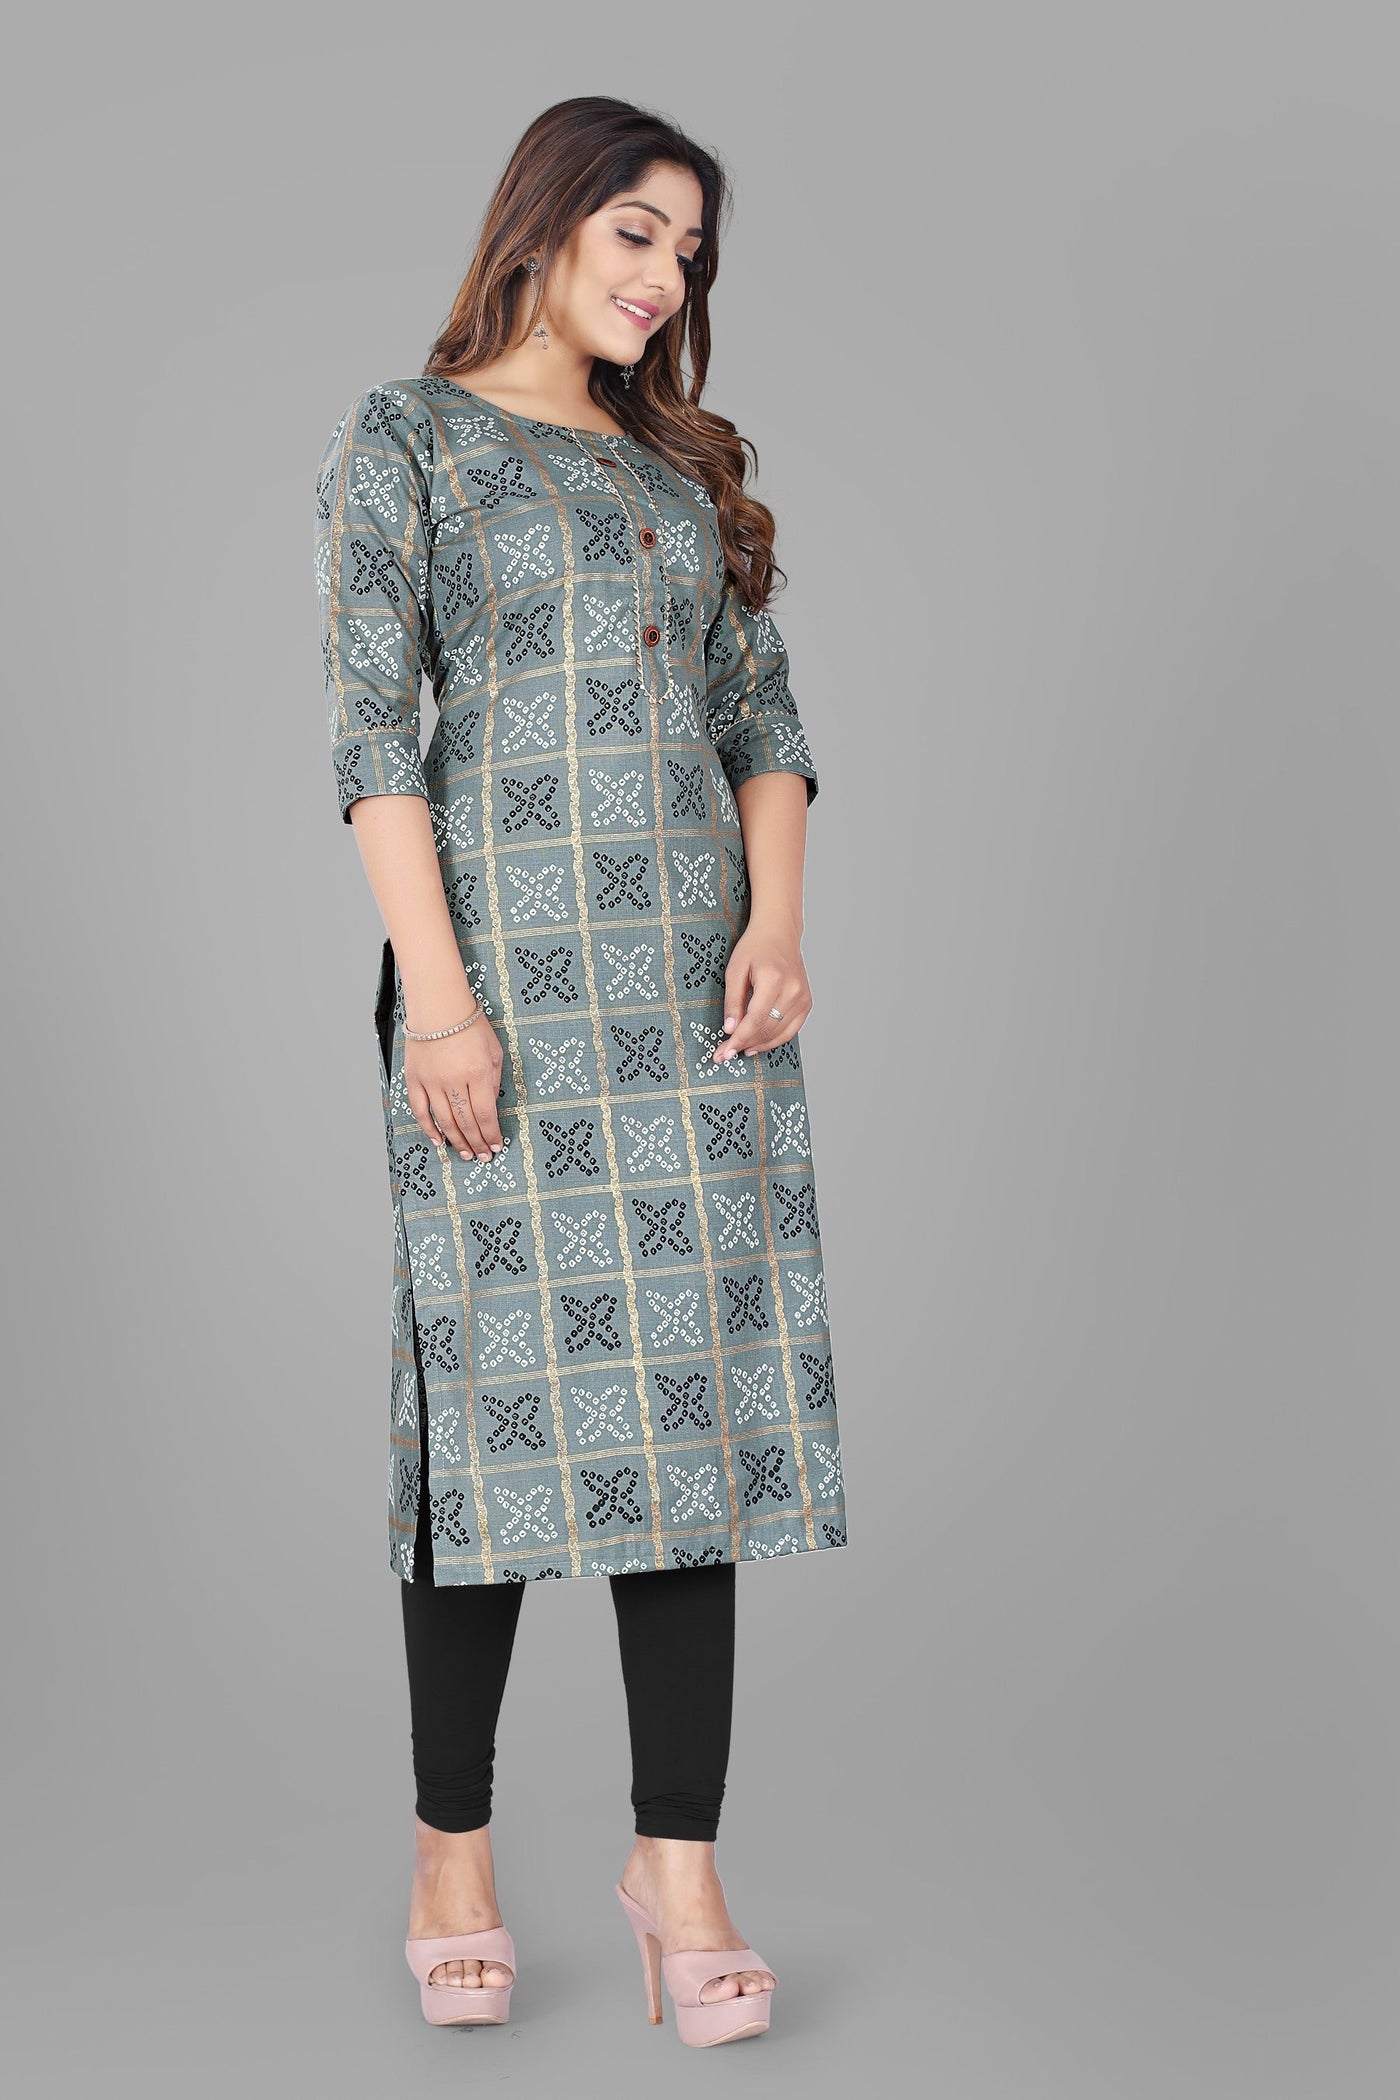 Bandhani Cotton Printed Ready to Wear Grey Kurti